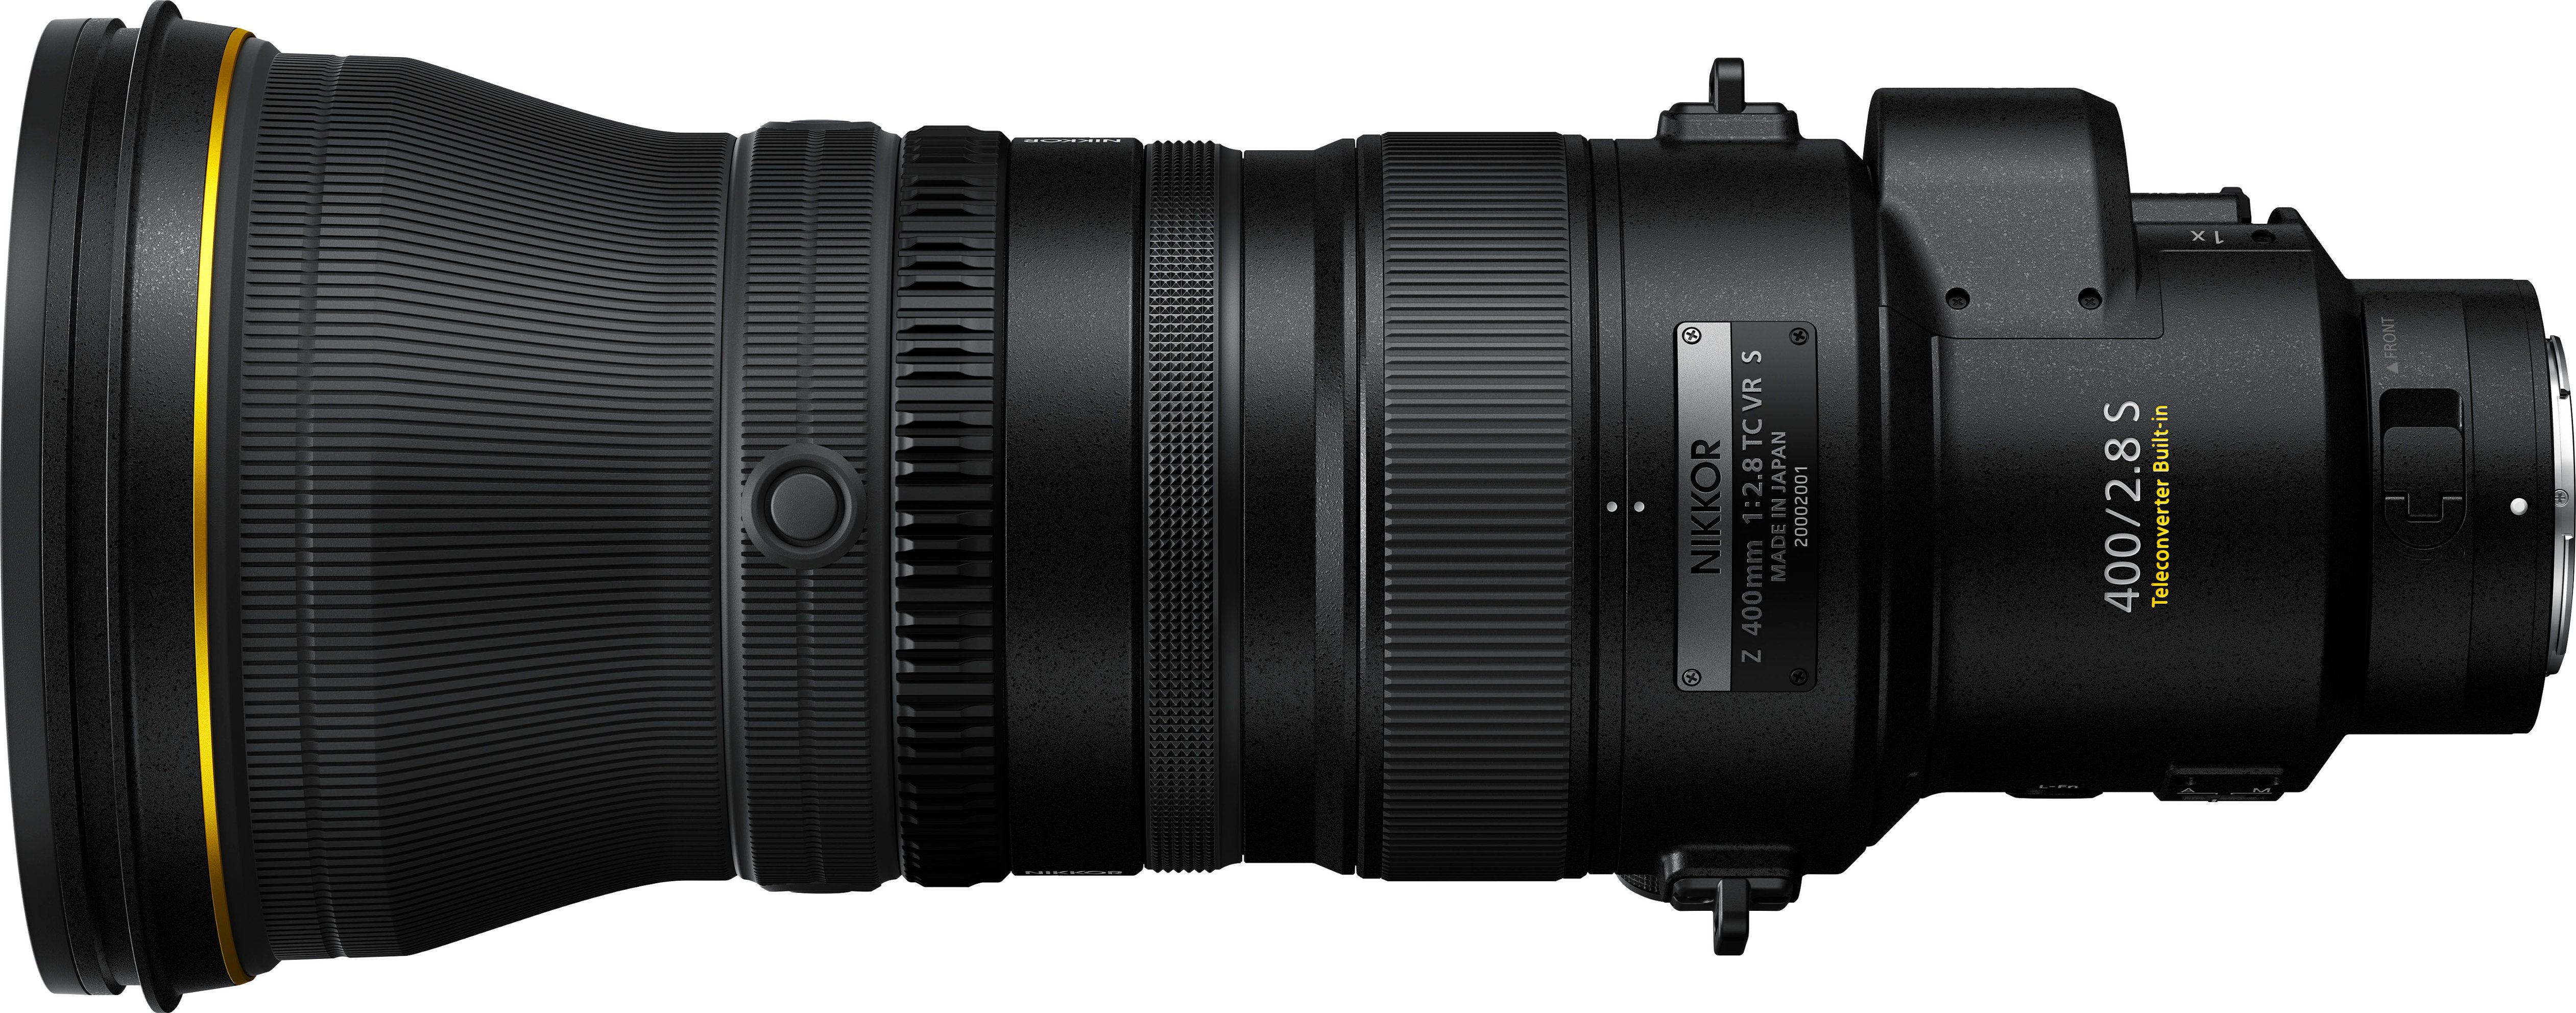 NIKKOR Z 400mm f/2.8 TC VR S Super-Telephoto Prime Lens for Nikon